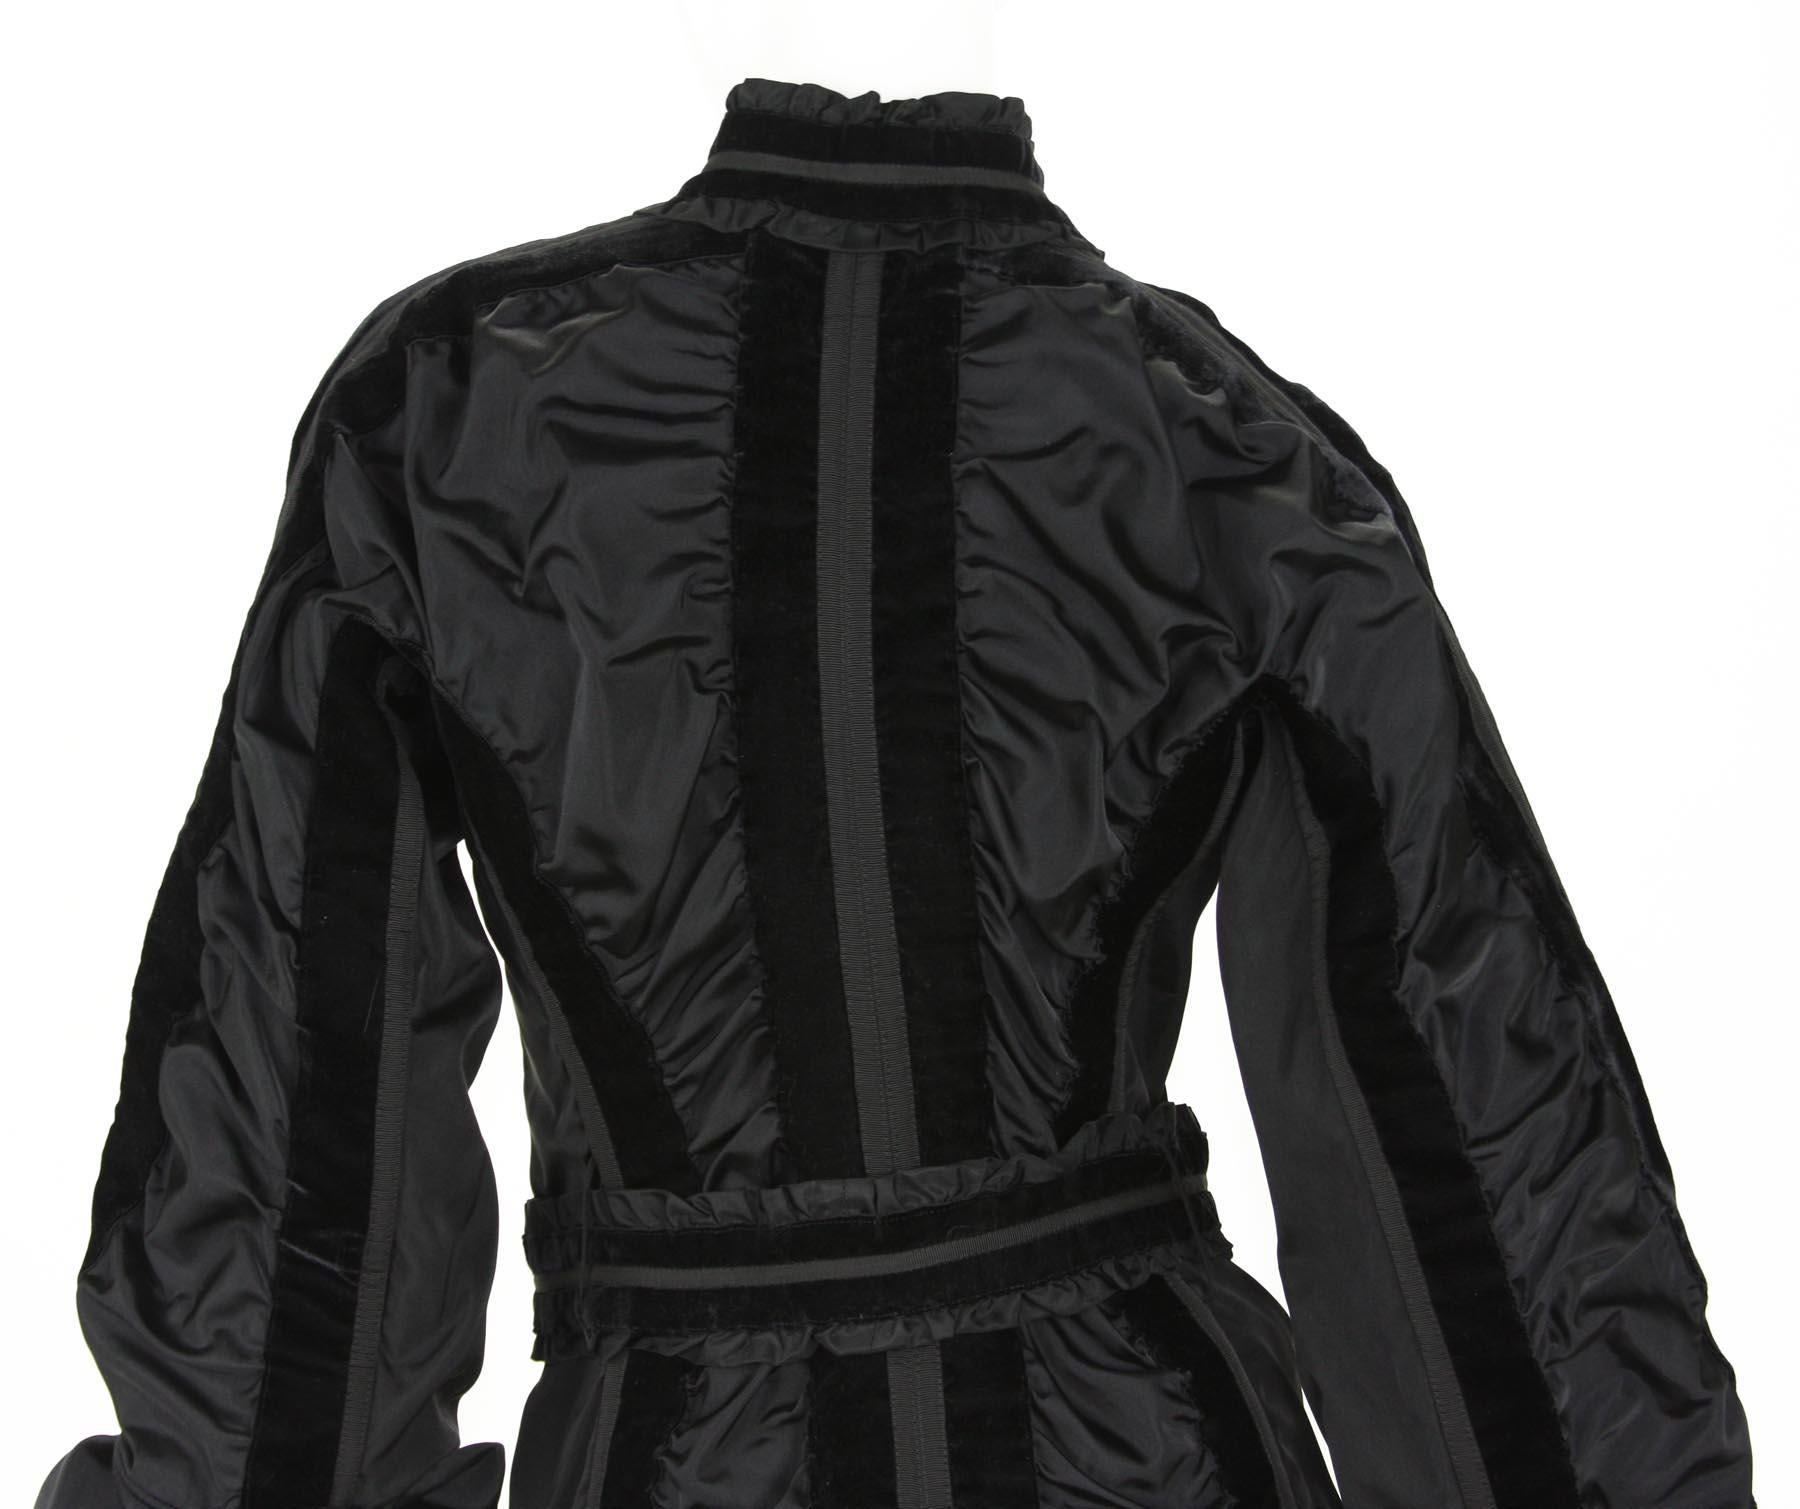 Tom Ford for Yves Saint Laurent FW 2002 Collection Black Taffeta Velvet Jacket 6 For Sale 7